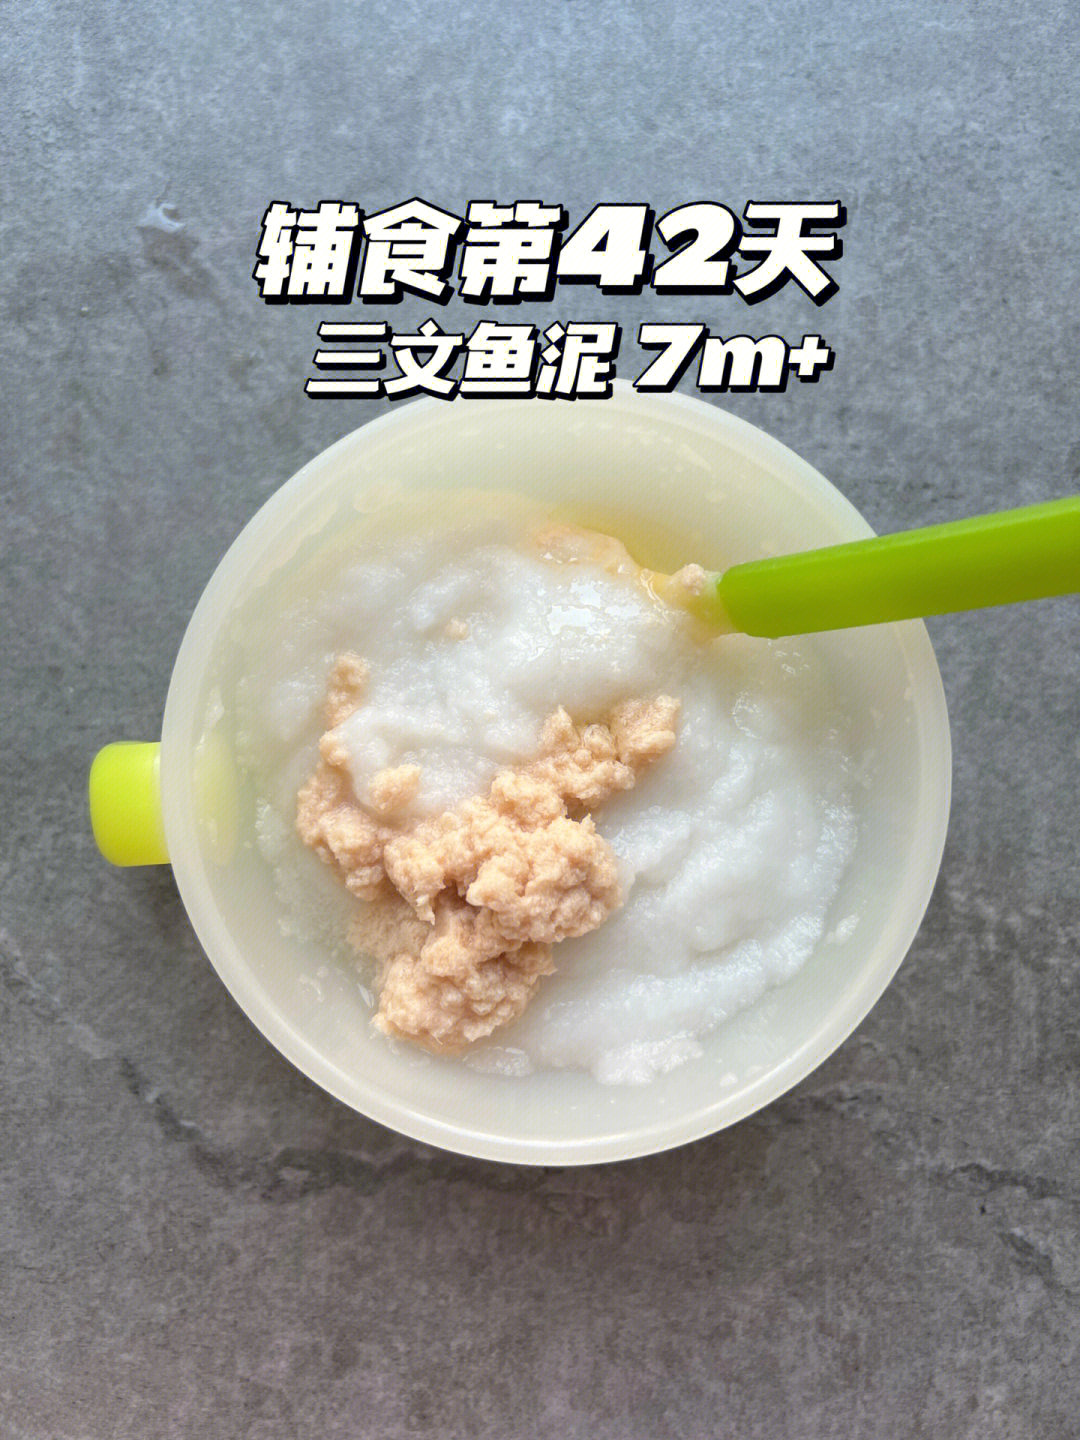 今日辅食上午:米粉10g 80ml水 三文鱼泥下午:苹果洋梨豌豆成品泥[玫瑰